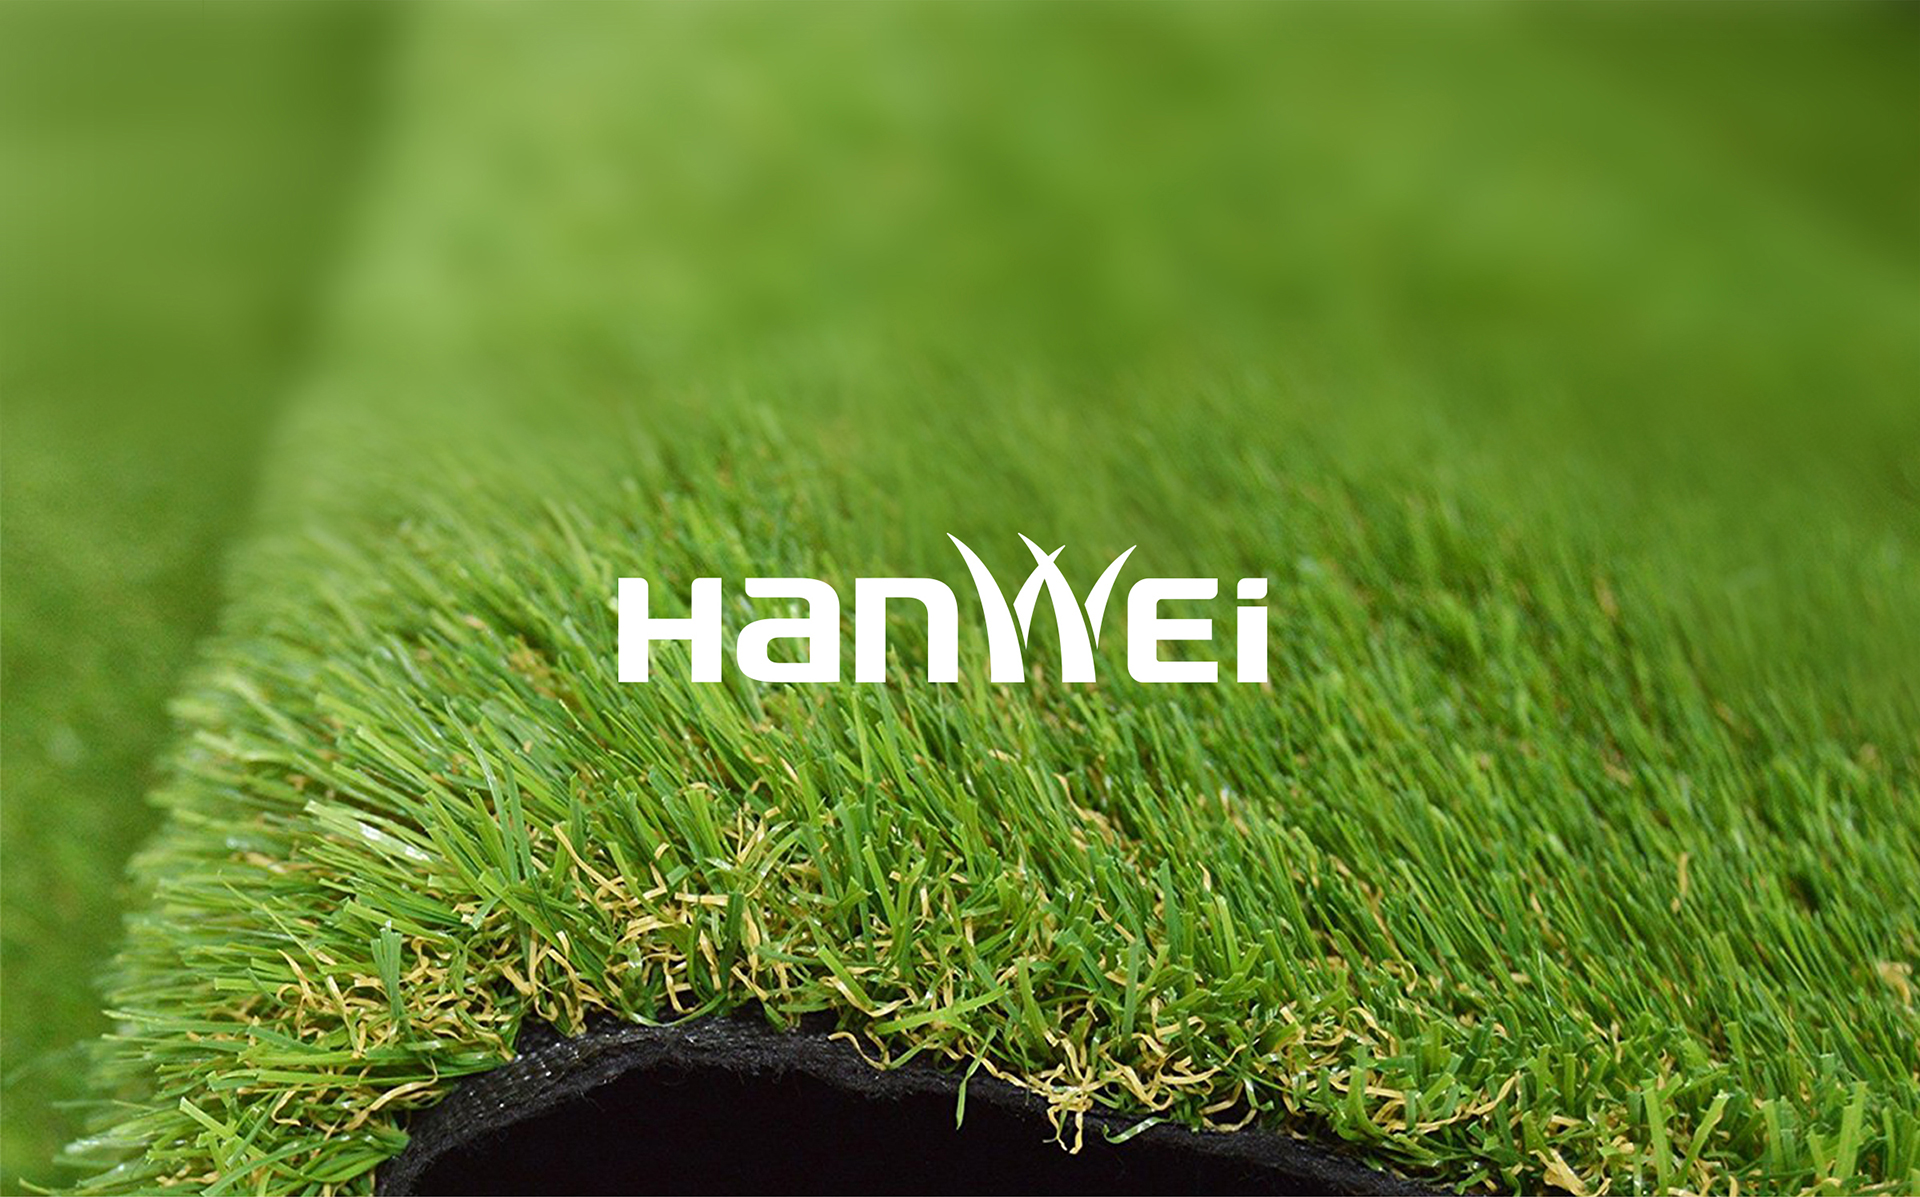 常州汉威人造草坪品牌全案策划设计网页